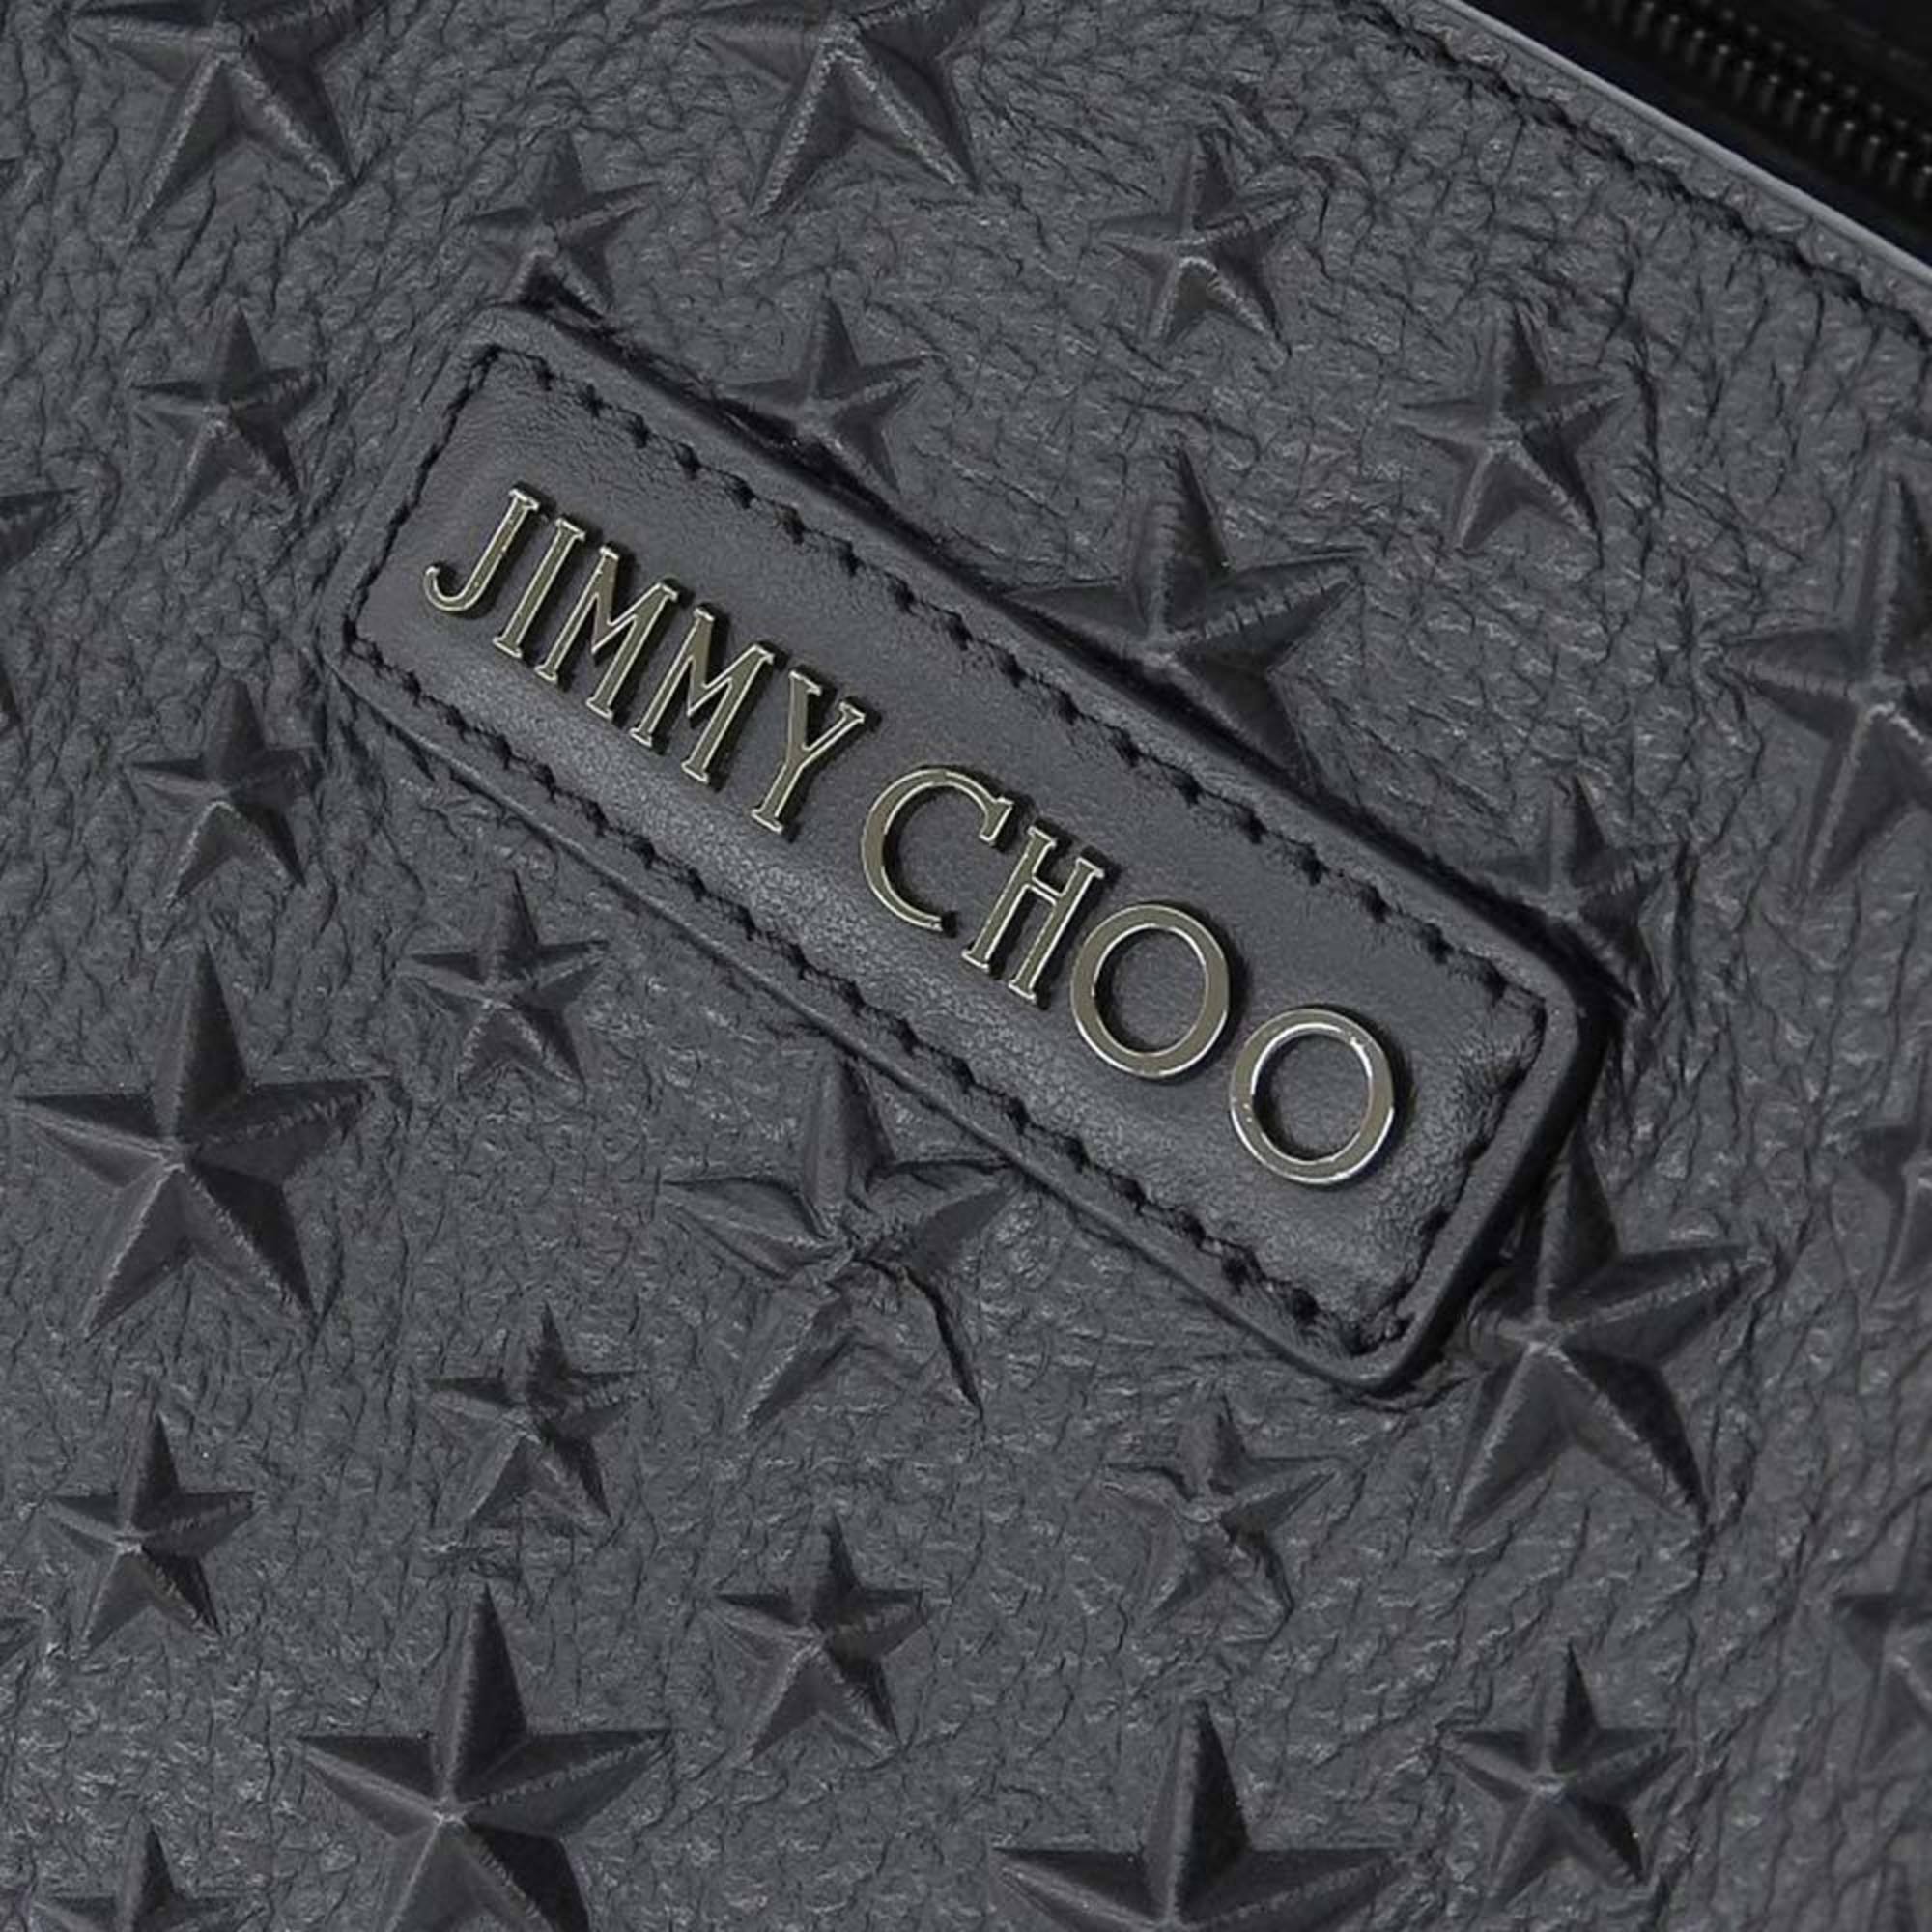 Jimmy Choo JIMMY CHOO star studs tote bag leather black